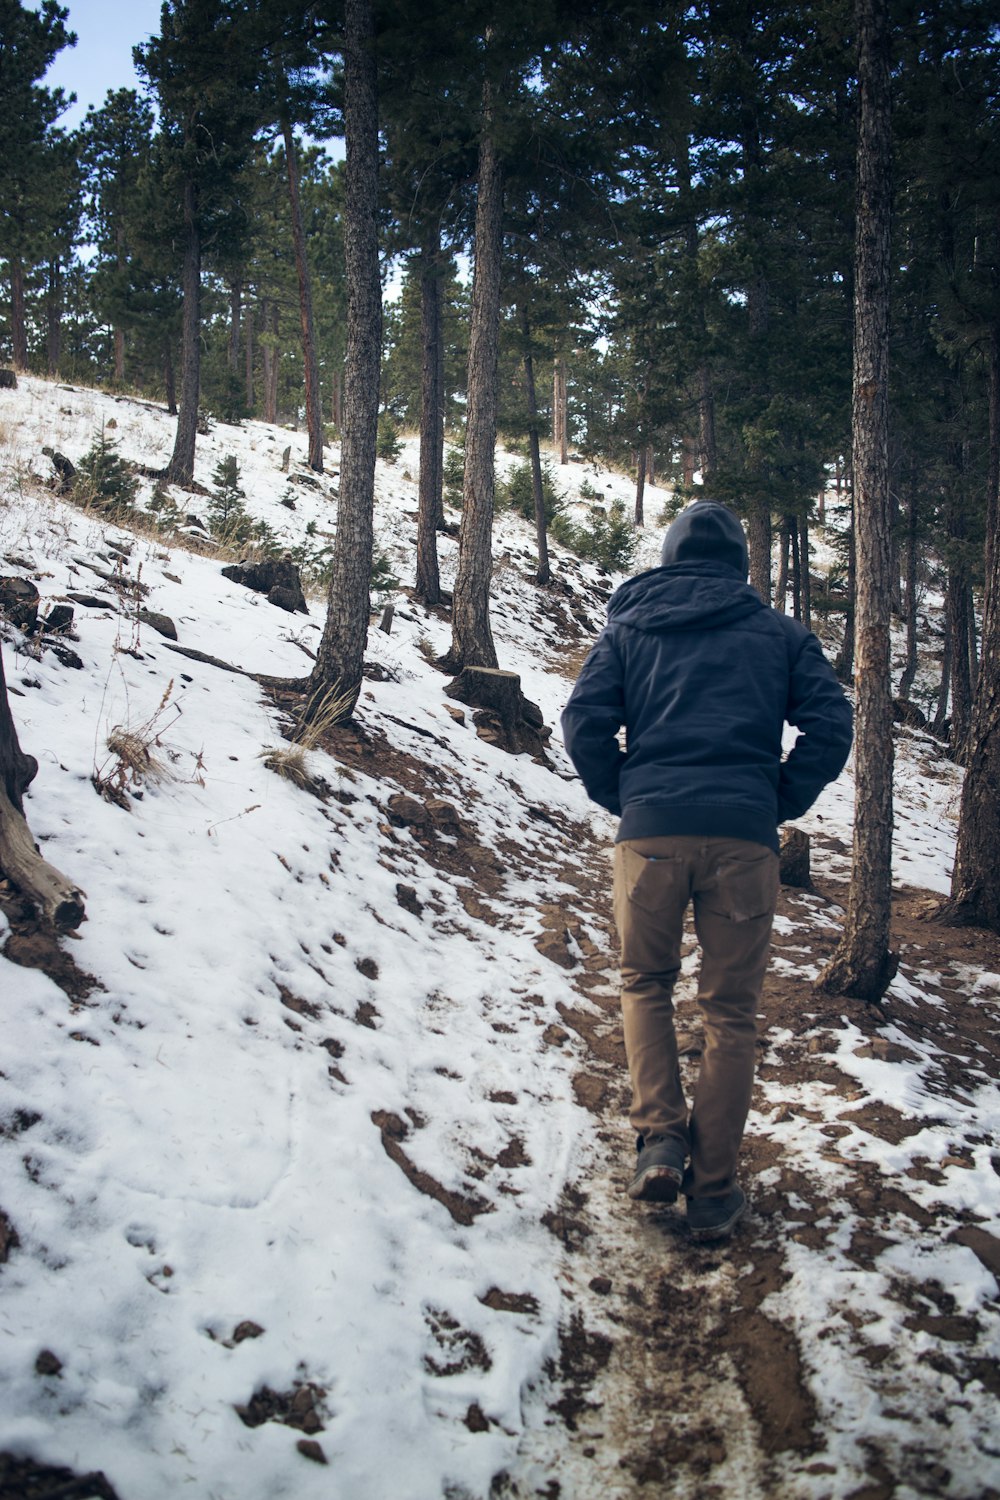 黒いフード付きコートを着た男性が、冬の雪の降る木々の下を歩く